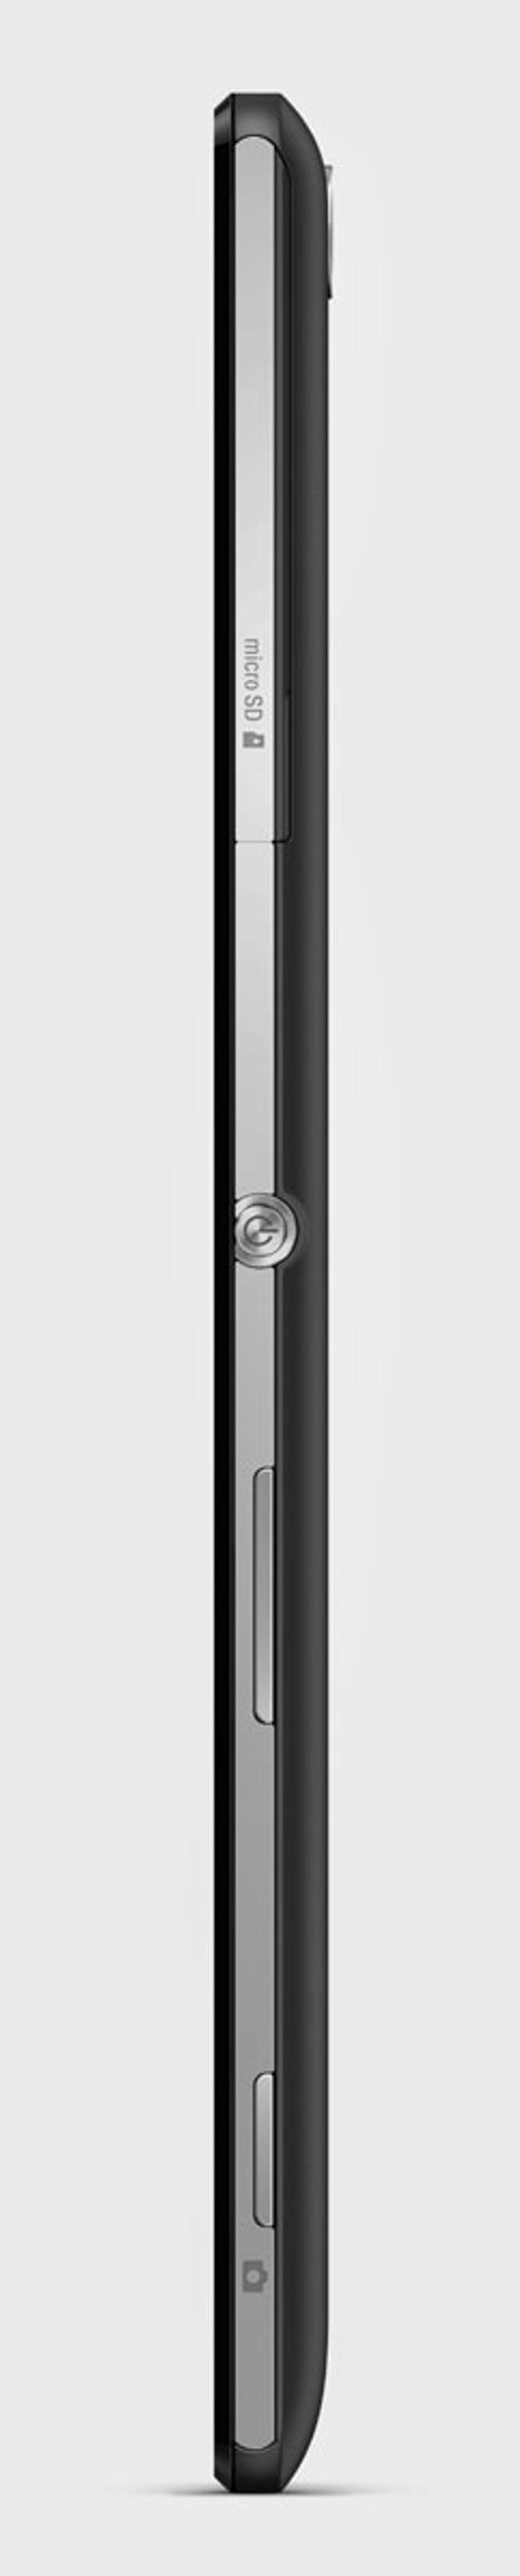 Sony Xperia T3 vista de perfil